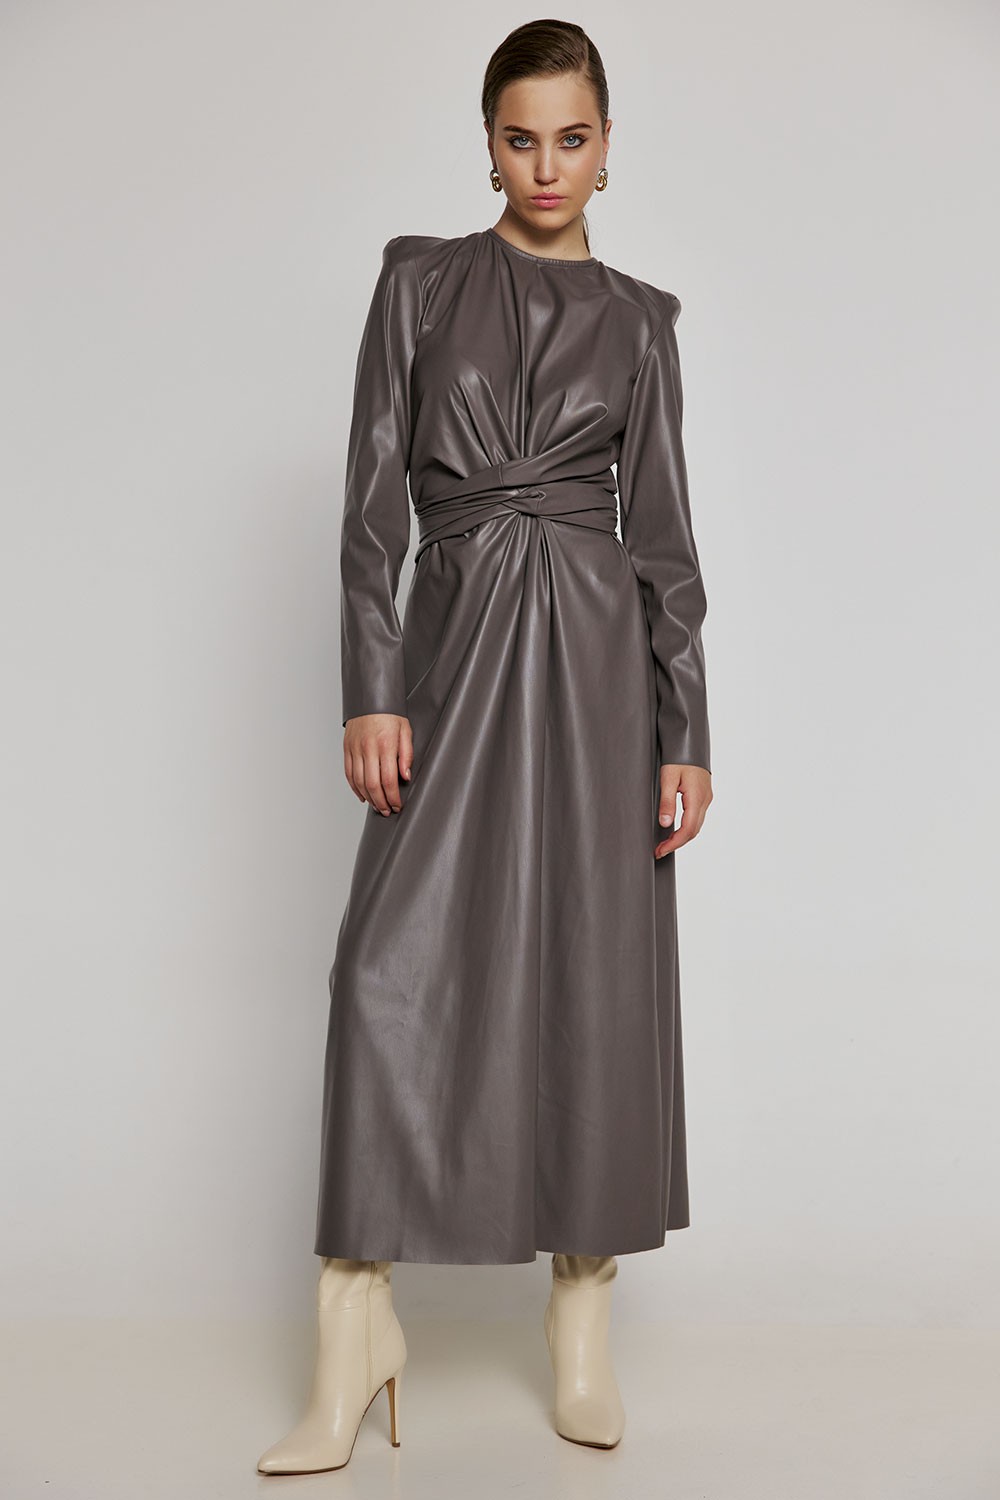 Milkwhite grey leather dress